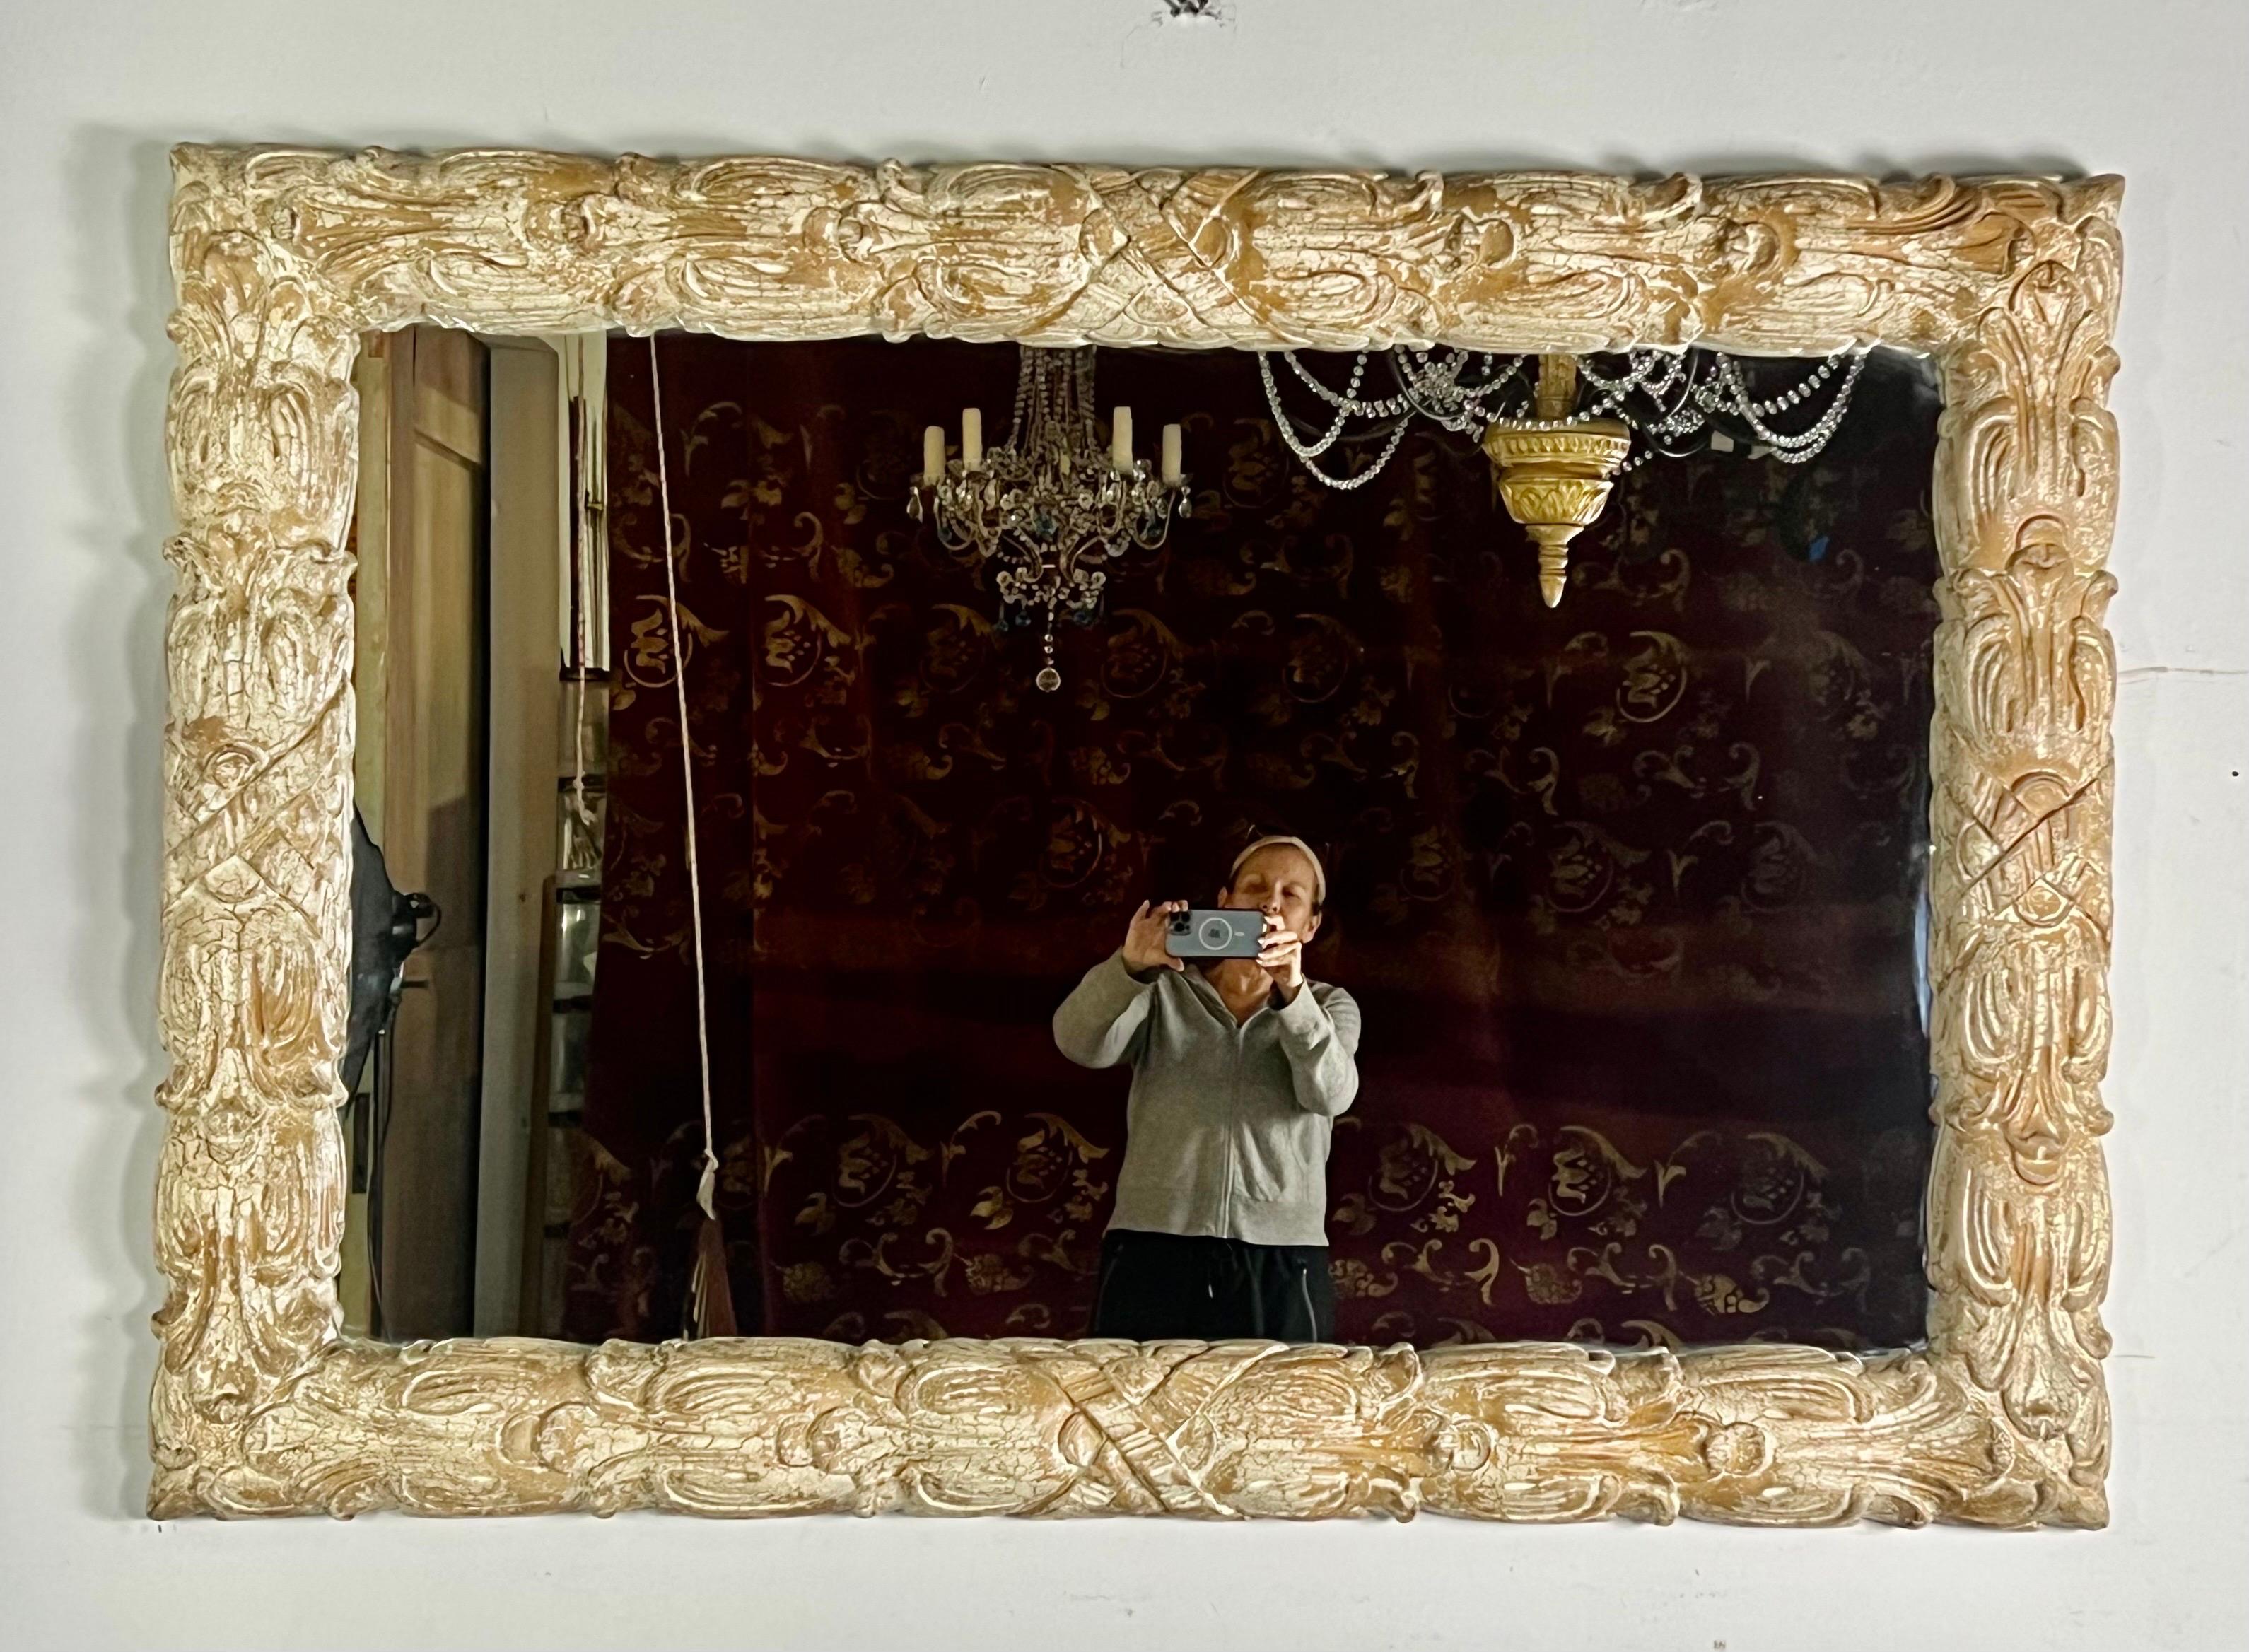 Miroir rectangulaire de grande taille de style français qui peut être installé verticalement ou horizontalement.  Il a une finition craquelée peinte sur mesure dans une couleur grège crémeuse qui était populaire au milieu du 20e siècle.